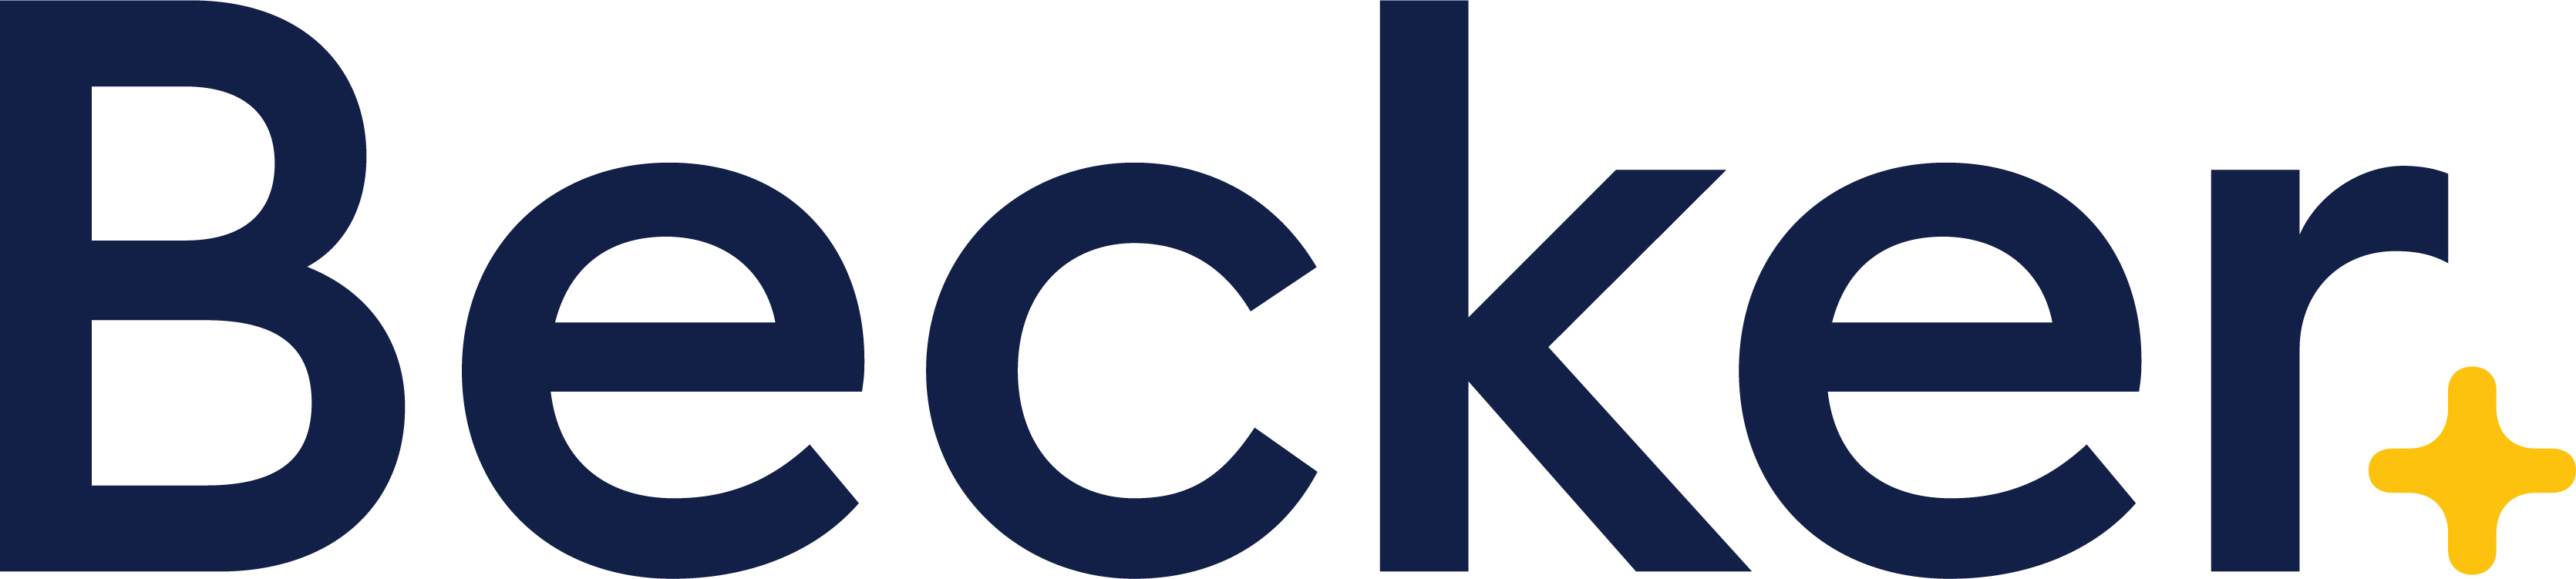 Becker_Logo_RGB_BECKER-full-color-(1).jpg